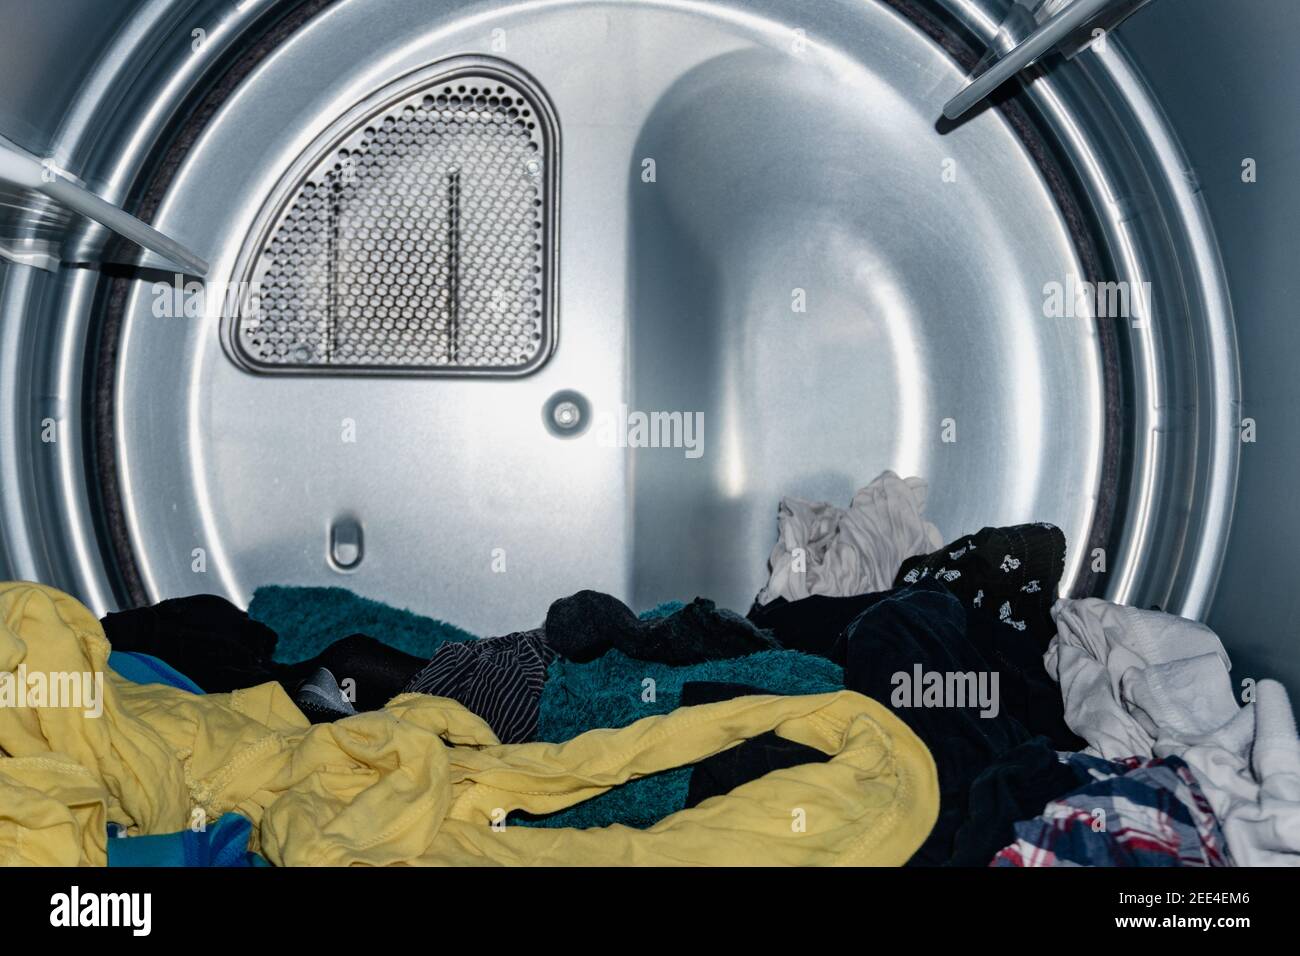 vestiti di molti colori che asciugano nell'asciugatore, già lavati nella lavatrice. asciuga industriale. asciuga domestico. asciuga veloce. vista dall'interno Foto Stock